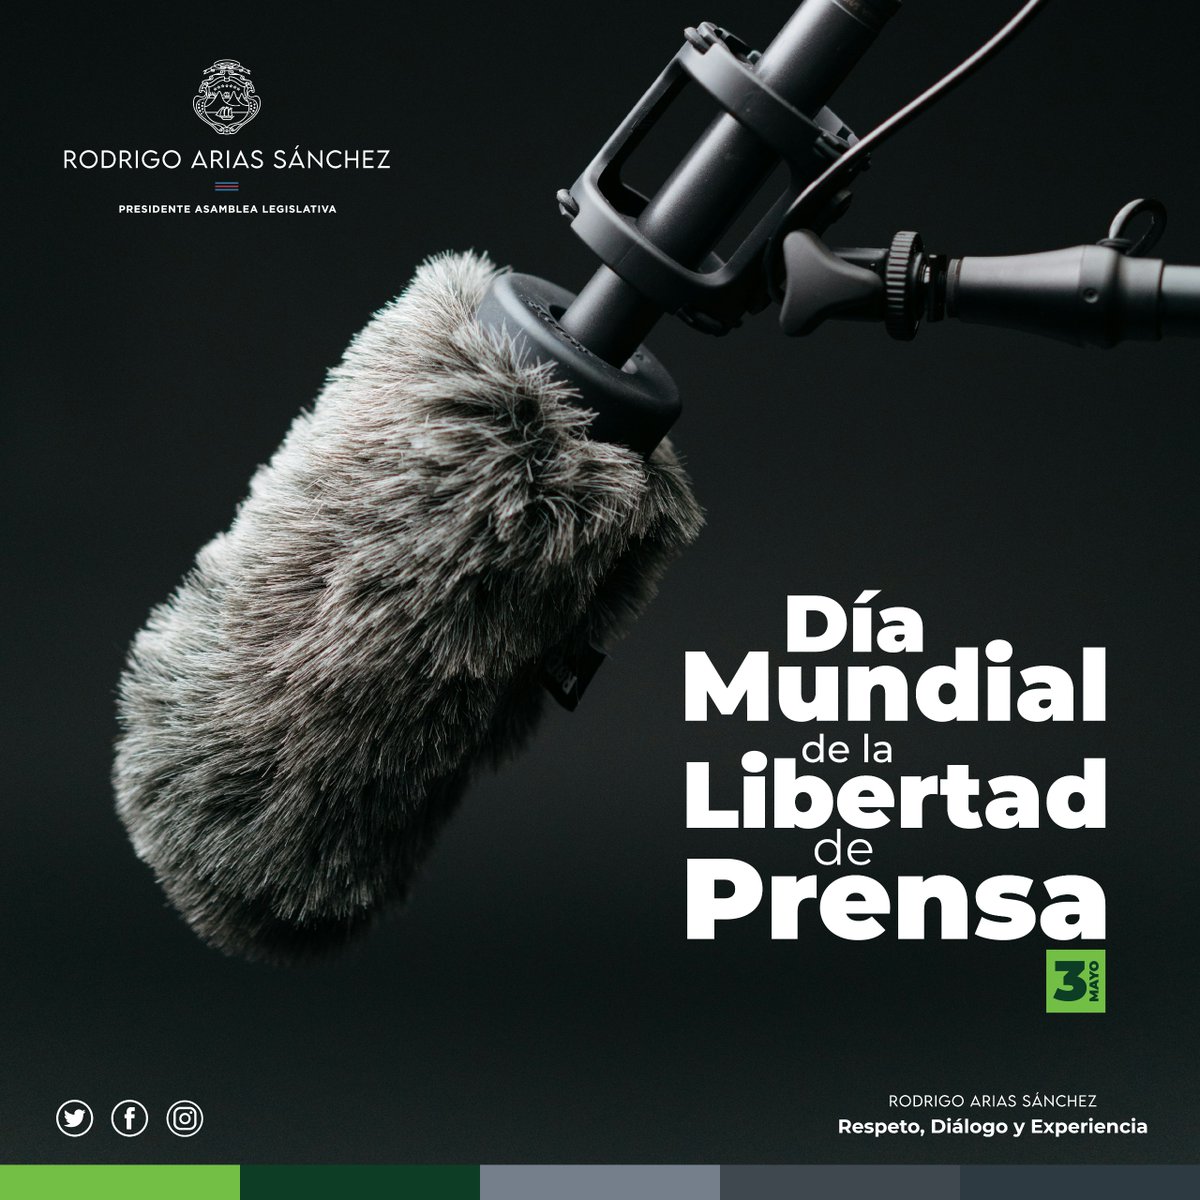 📢En Costa Rica, la libertad de prensa es esencial para nuestra democracia. Reconocemos desafíos, pero nos comprometemos a garantizar un ambiente propicio para un periodismo honesto y responsable. #LibertadDePrensa #PeriodismoResponsable